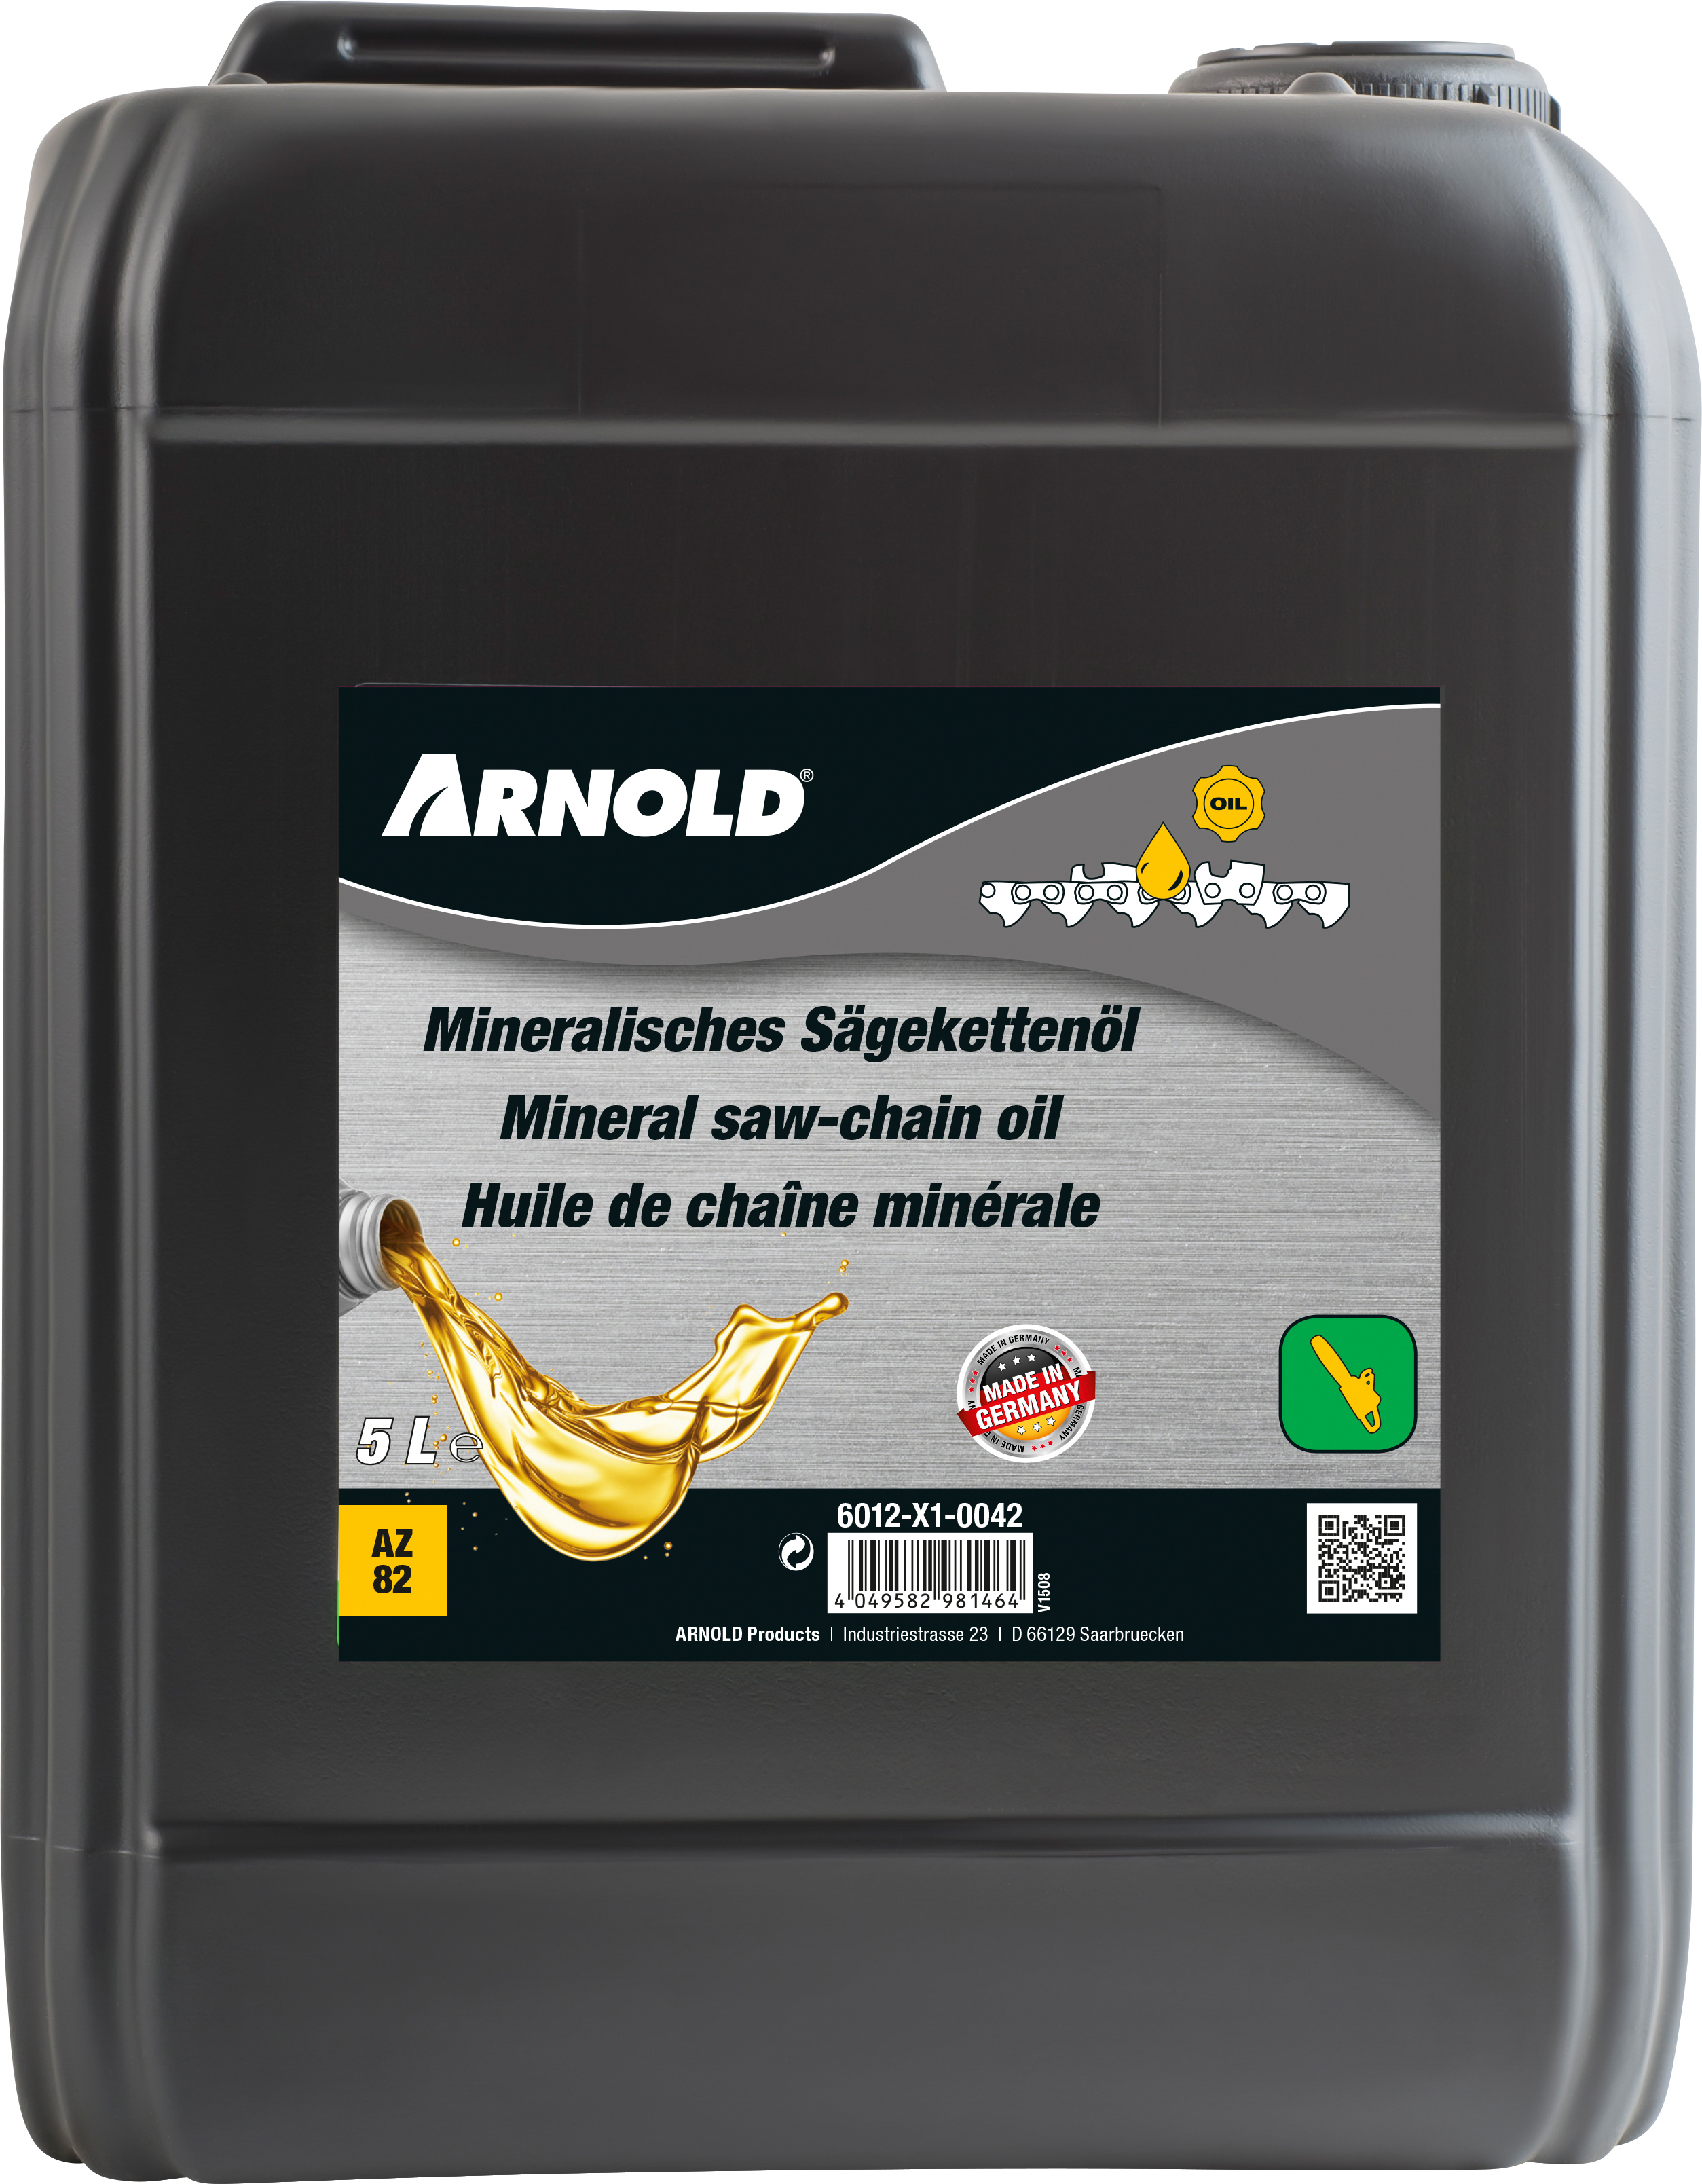 MTD PRODUCTS AG  -  WOLF GARTEN Sägekettenöl mineral 5 Liter Arnoldsortiment